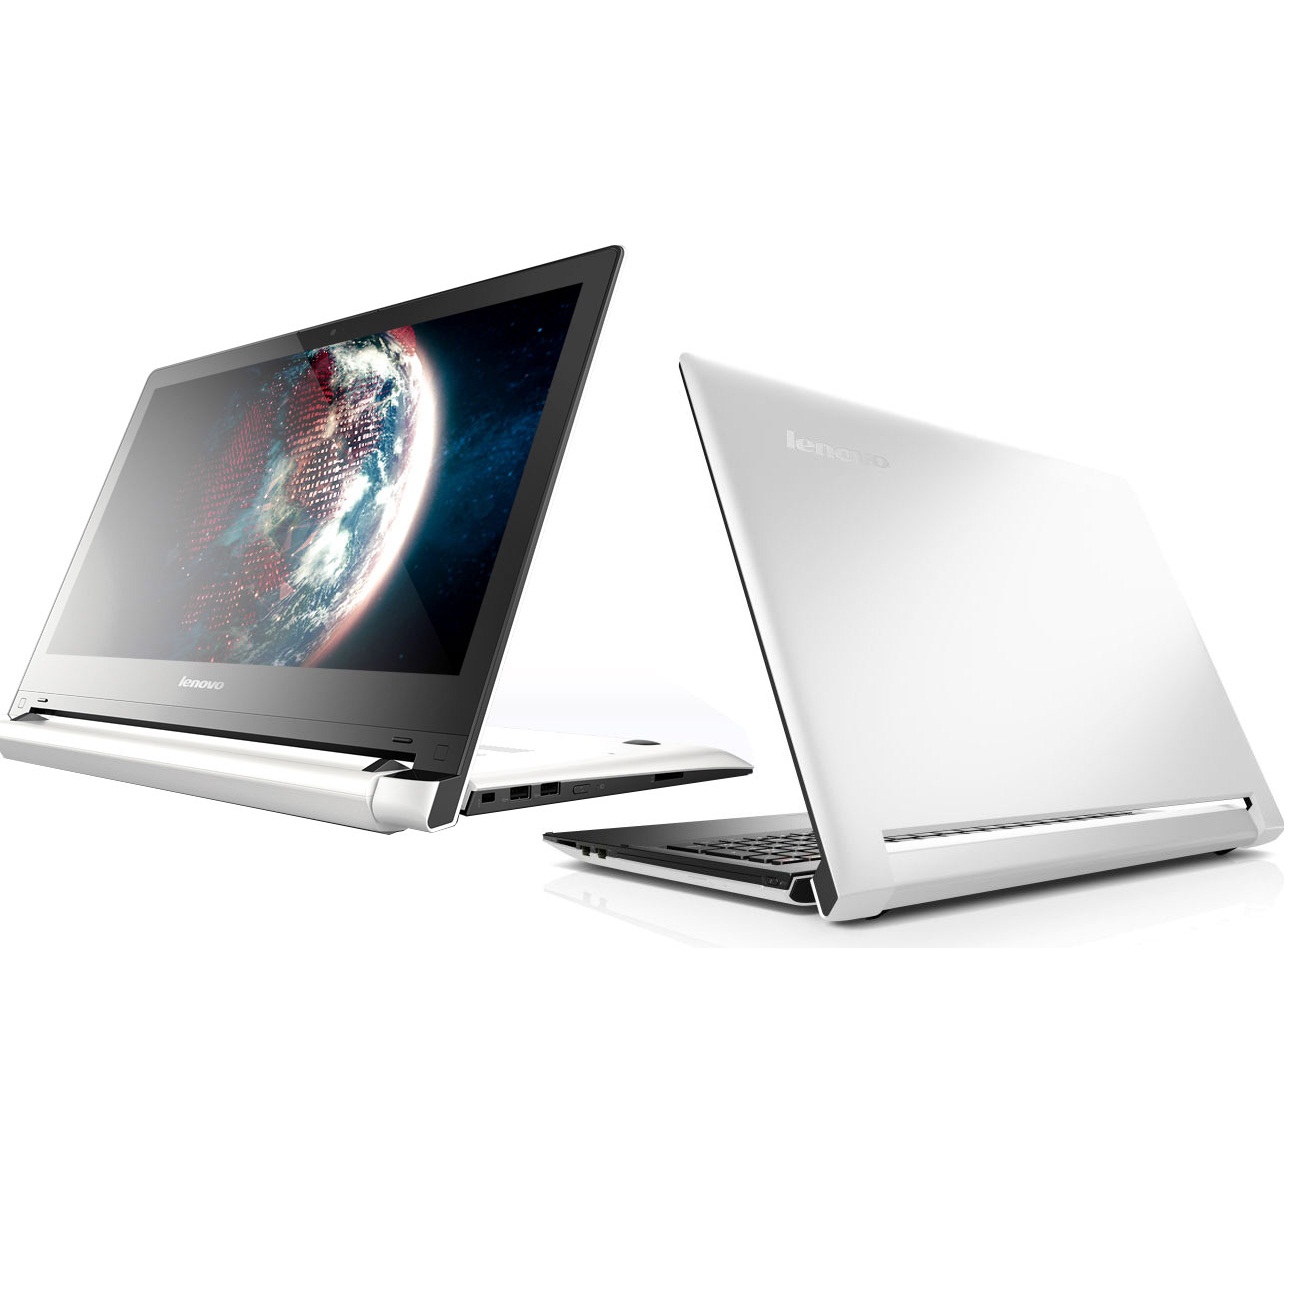 Máy tính xách tay Lenovo FLEX2 14 59420665 (White)- Màn hình xoay 300 độ/ Full HD